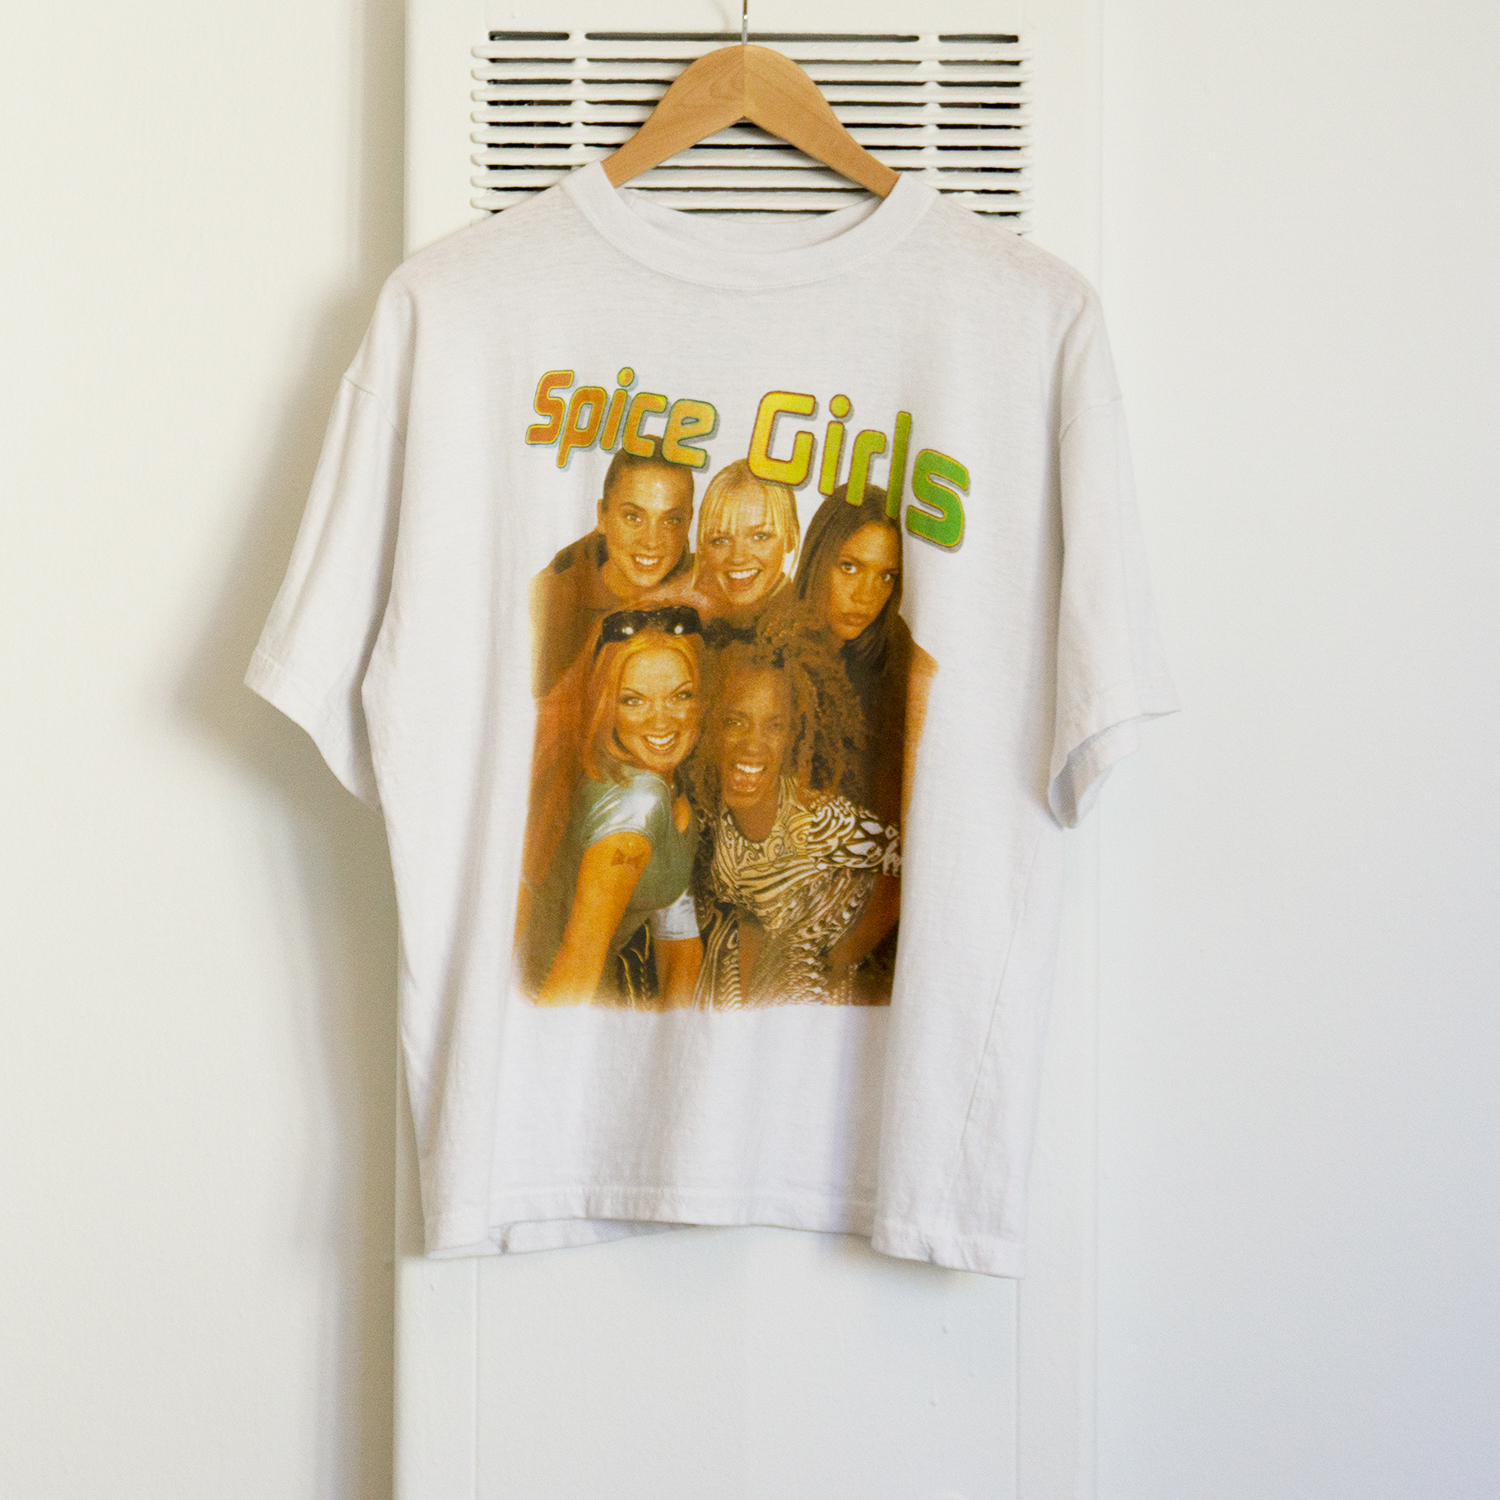 Spice Girls T-shirt